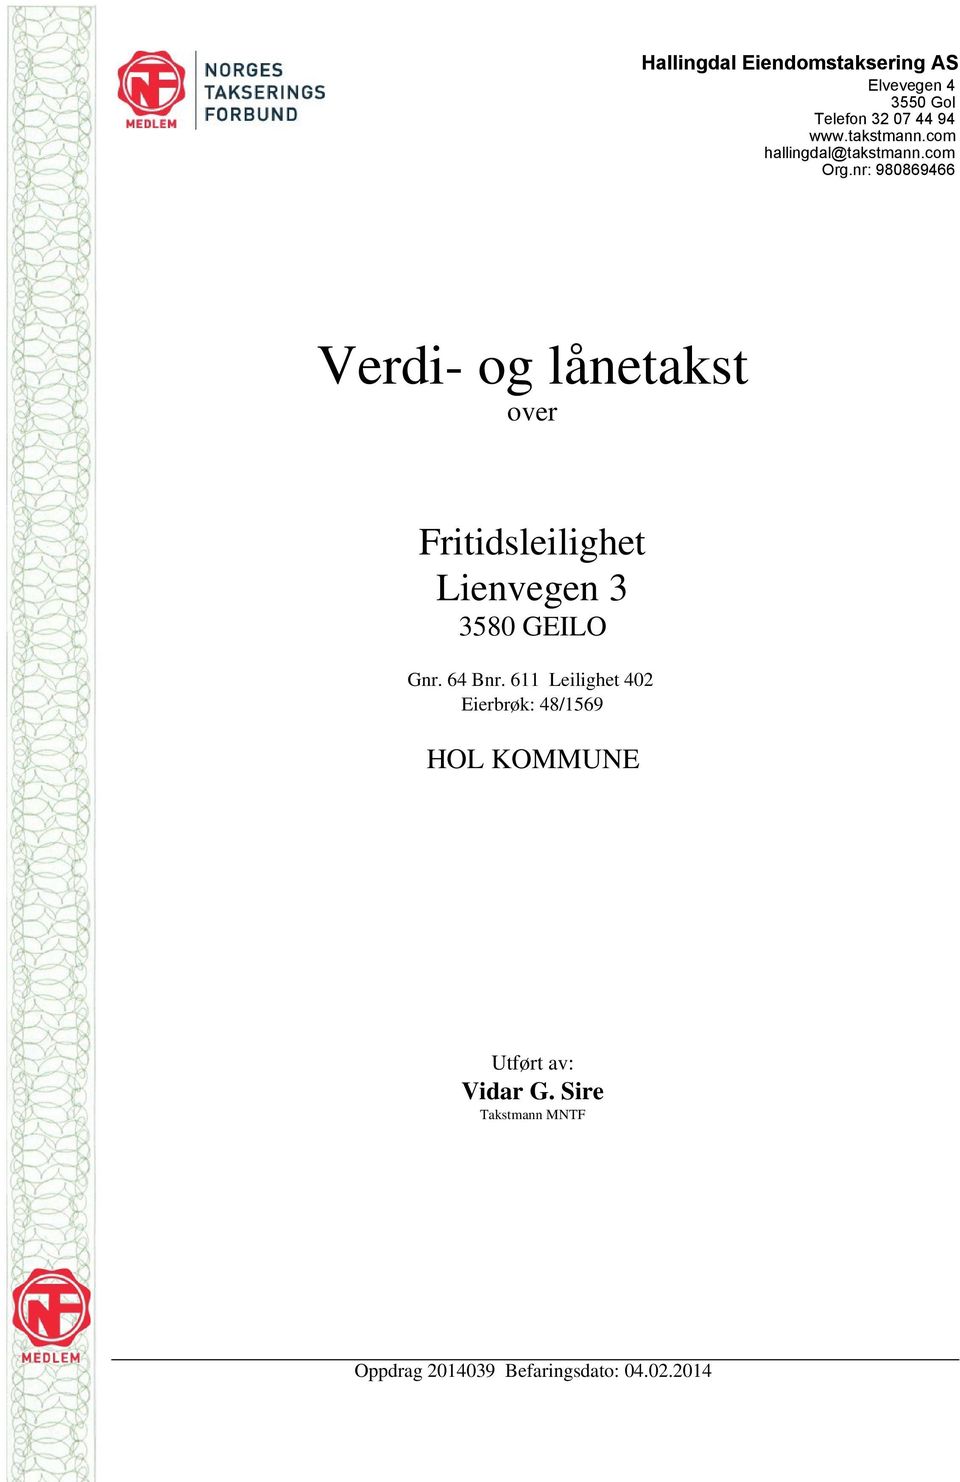 nr: 980869466 Verdi- og lånetakst over Fritidsleilighet Lienvegen 3 3580 GEILO Gnr.